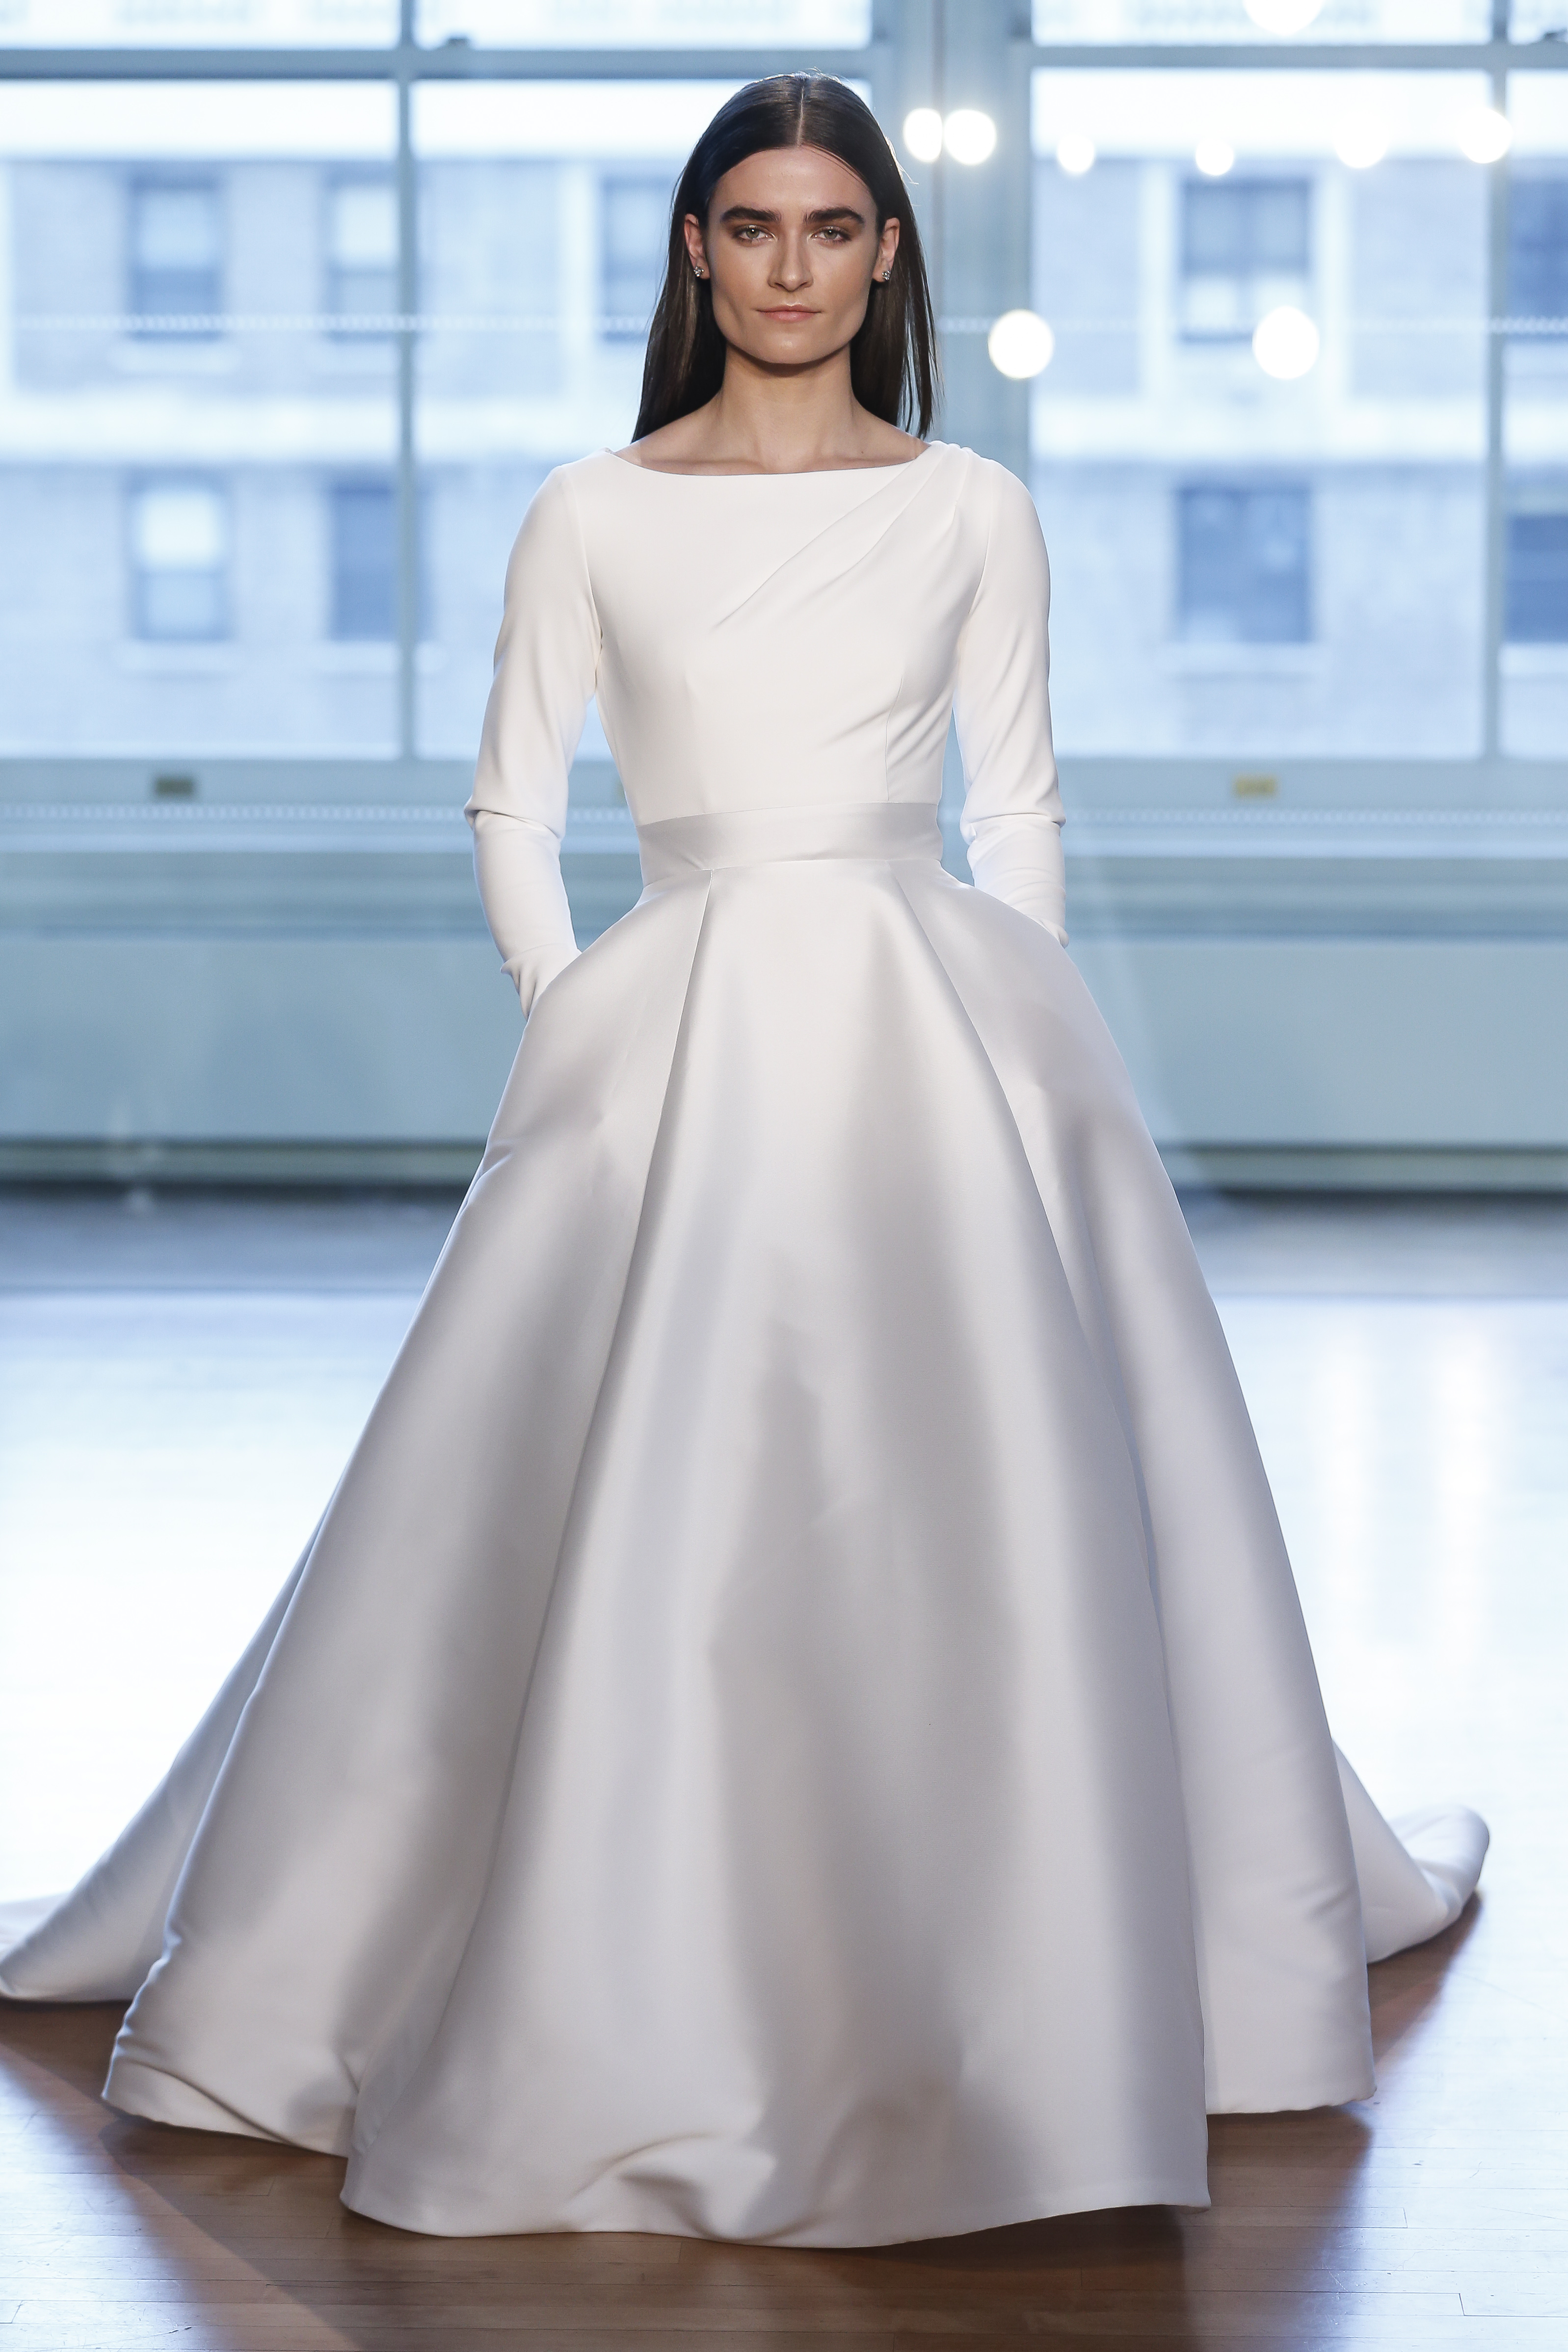 30 Wedding Dresses 2019 — Trends & Top Designers